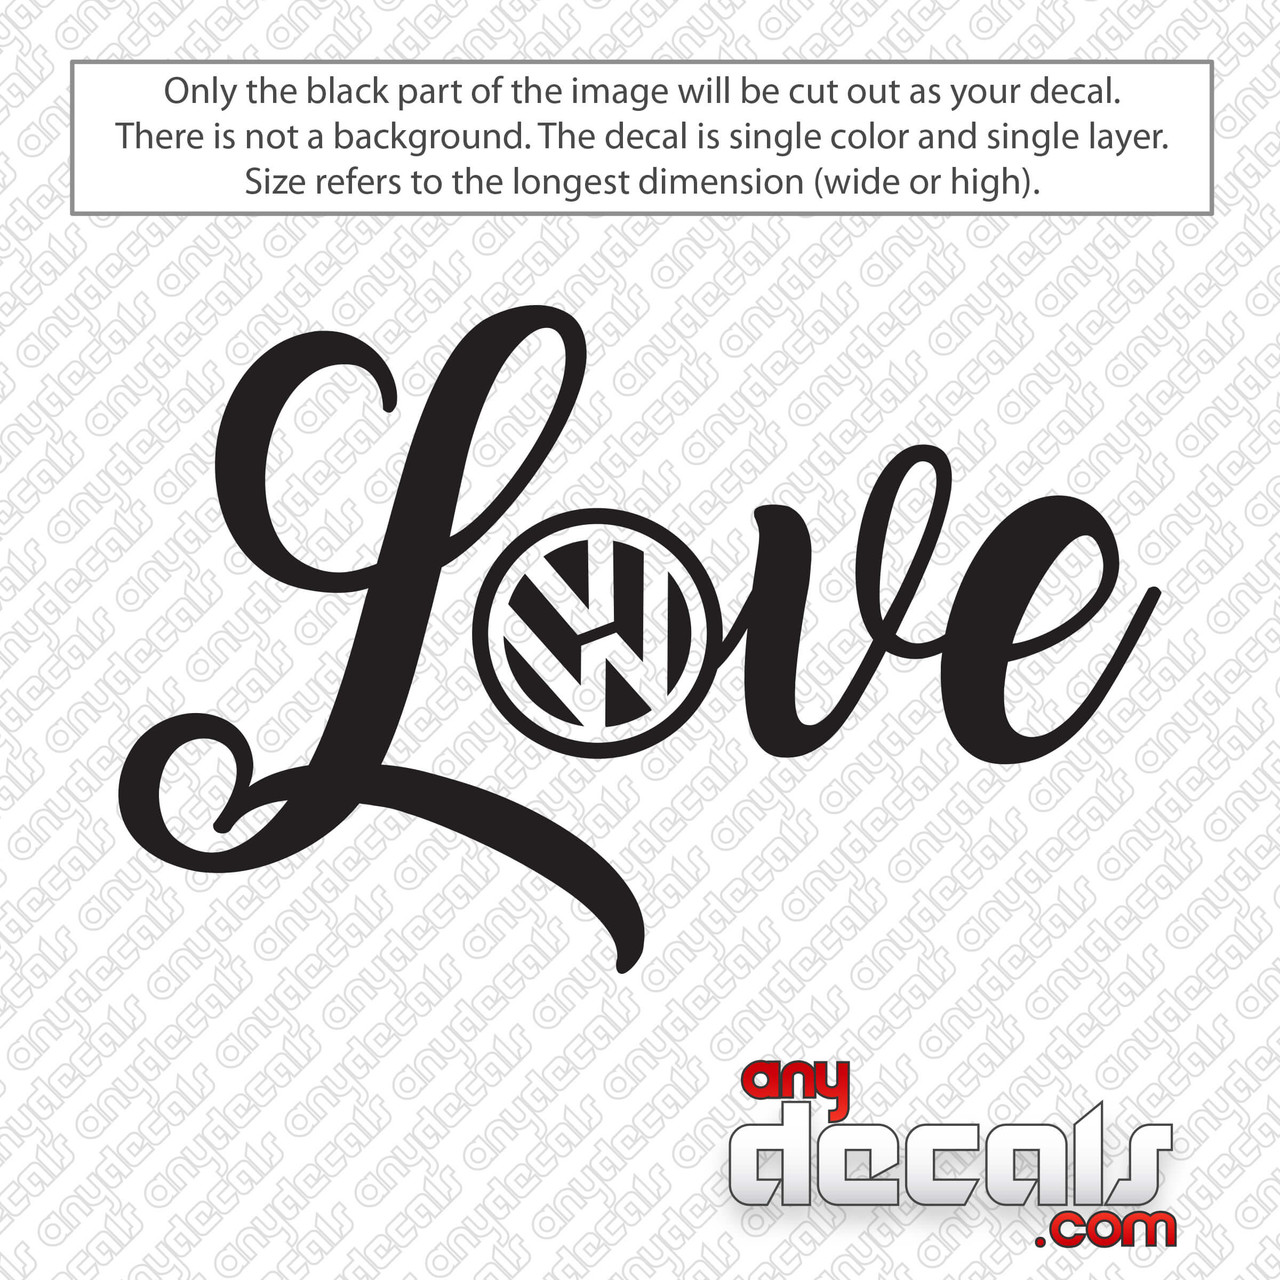 Volkswagen Logo Love Decal Sticker 